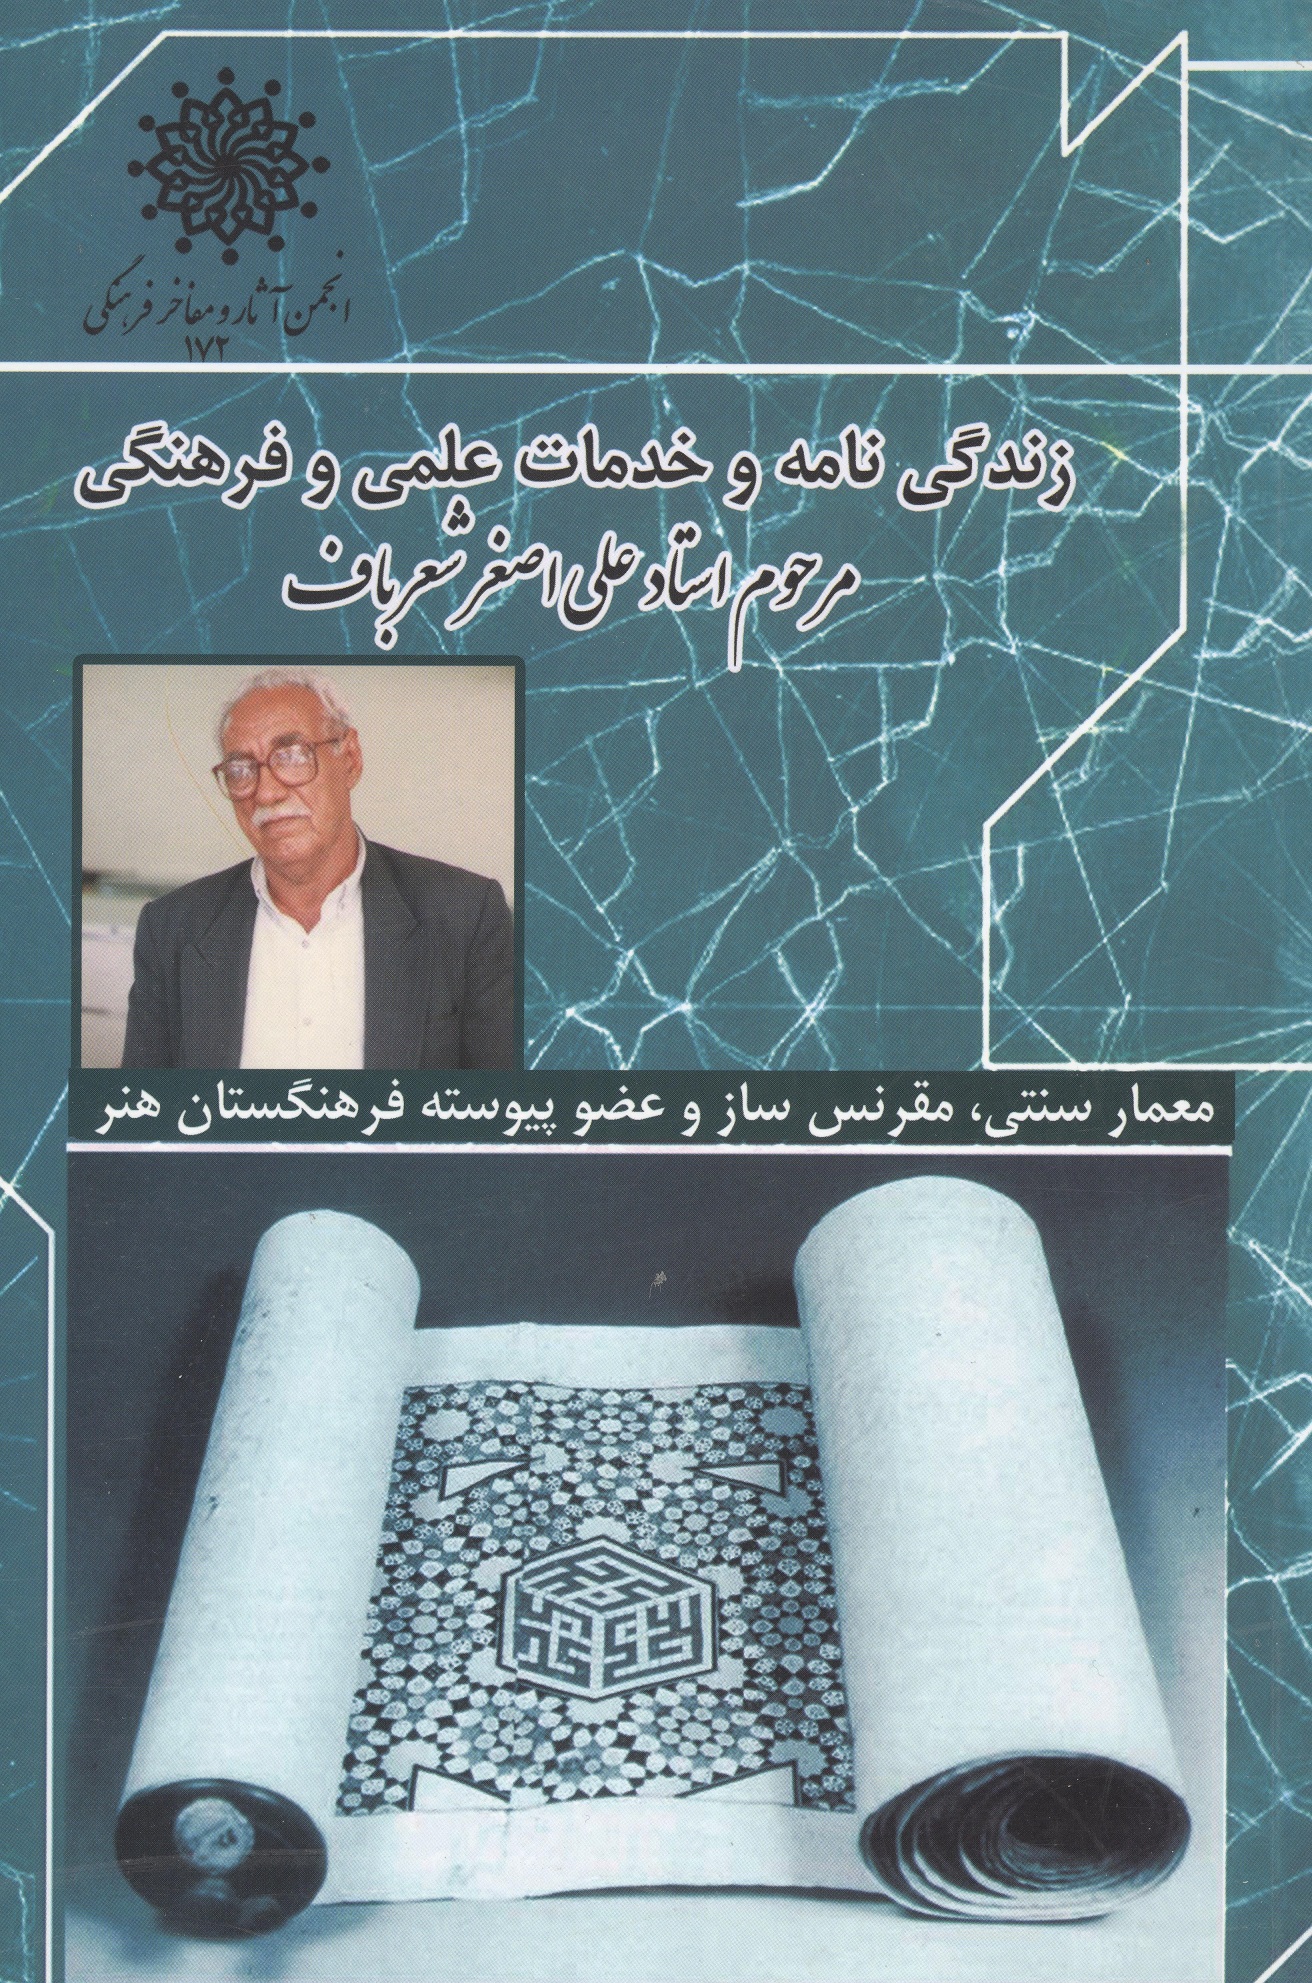 زندگی نامه و خدمات علمی و فرهنگی استاد علی اصغر شعرباف